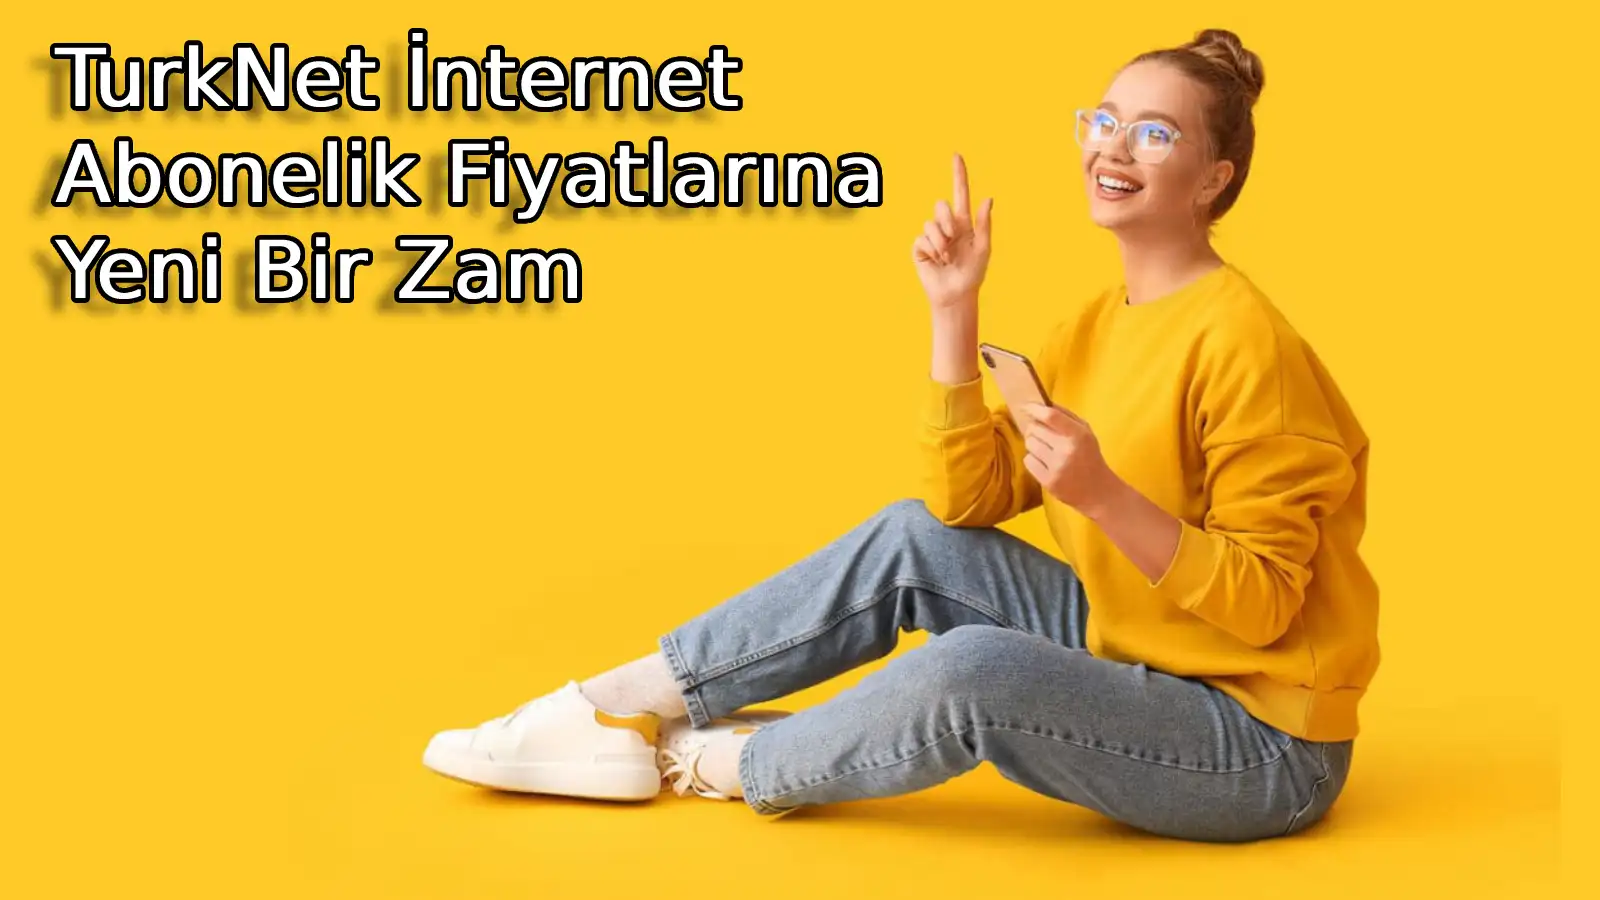 Türkiye’nin popüler internet hizmet